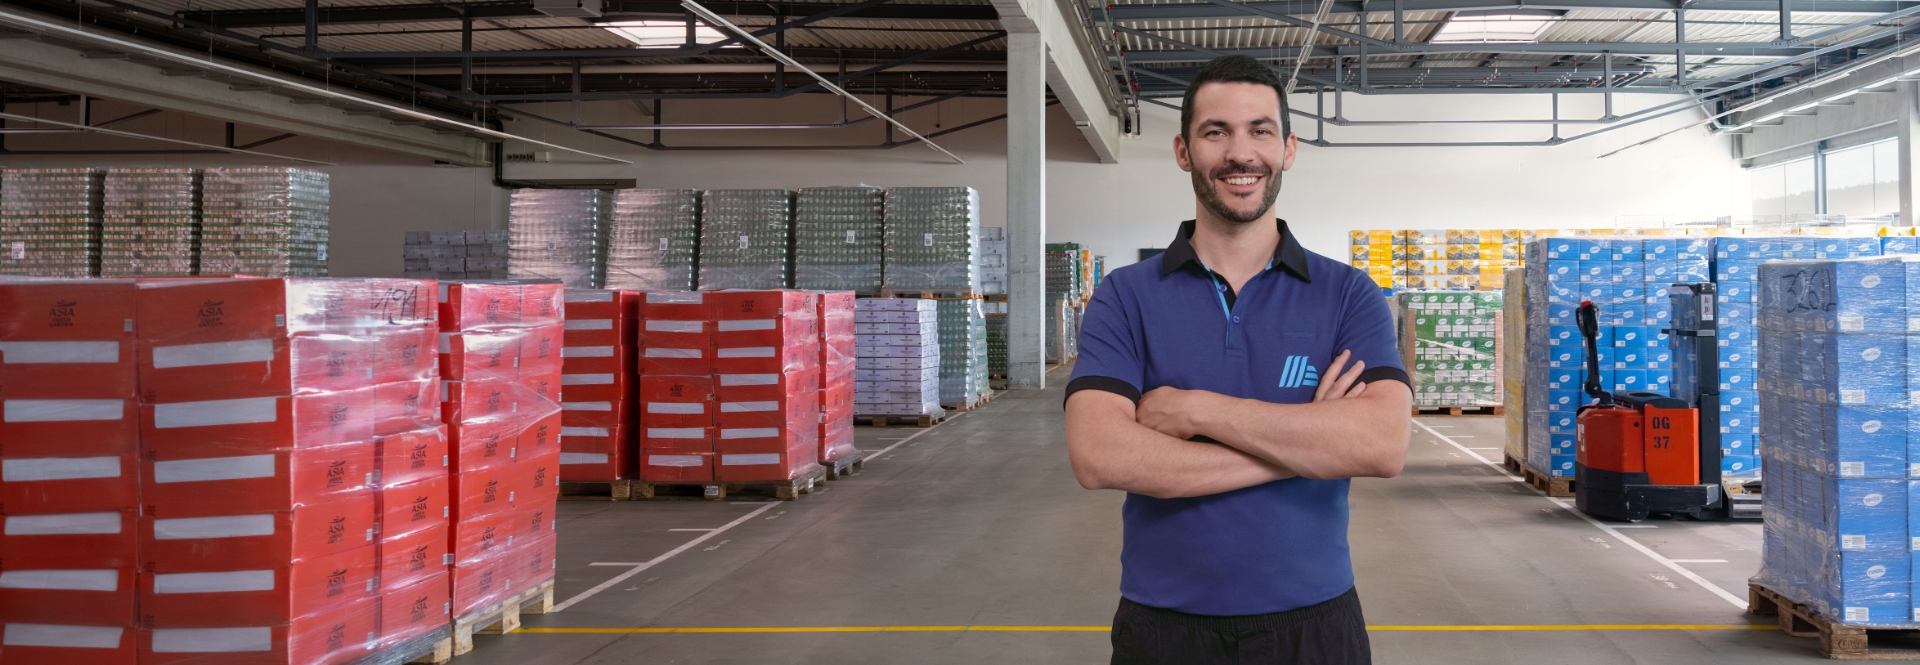 Logistics & Supply Chain Management: Je veux en apprendre plus au travail. Et toi?